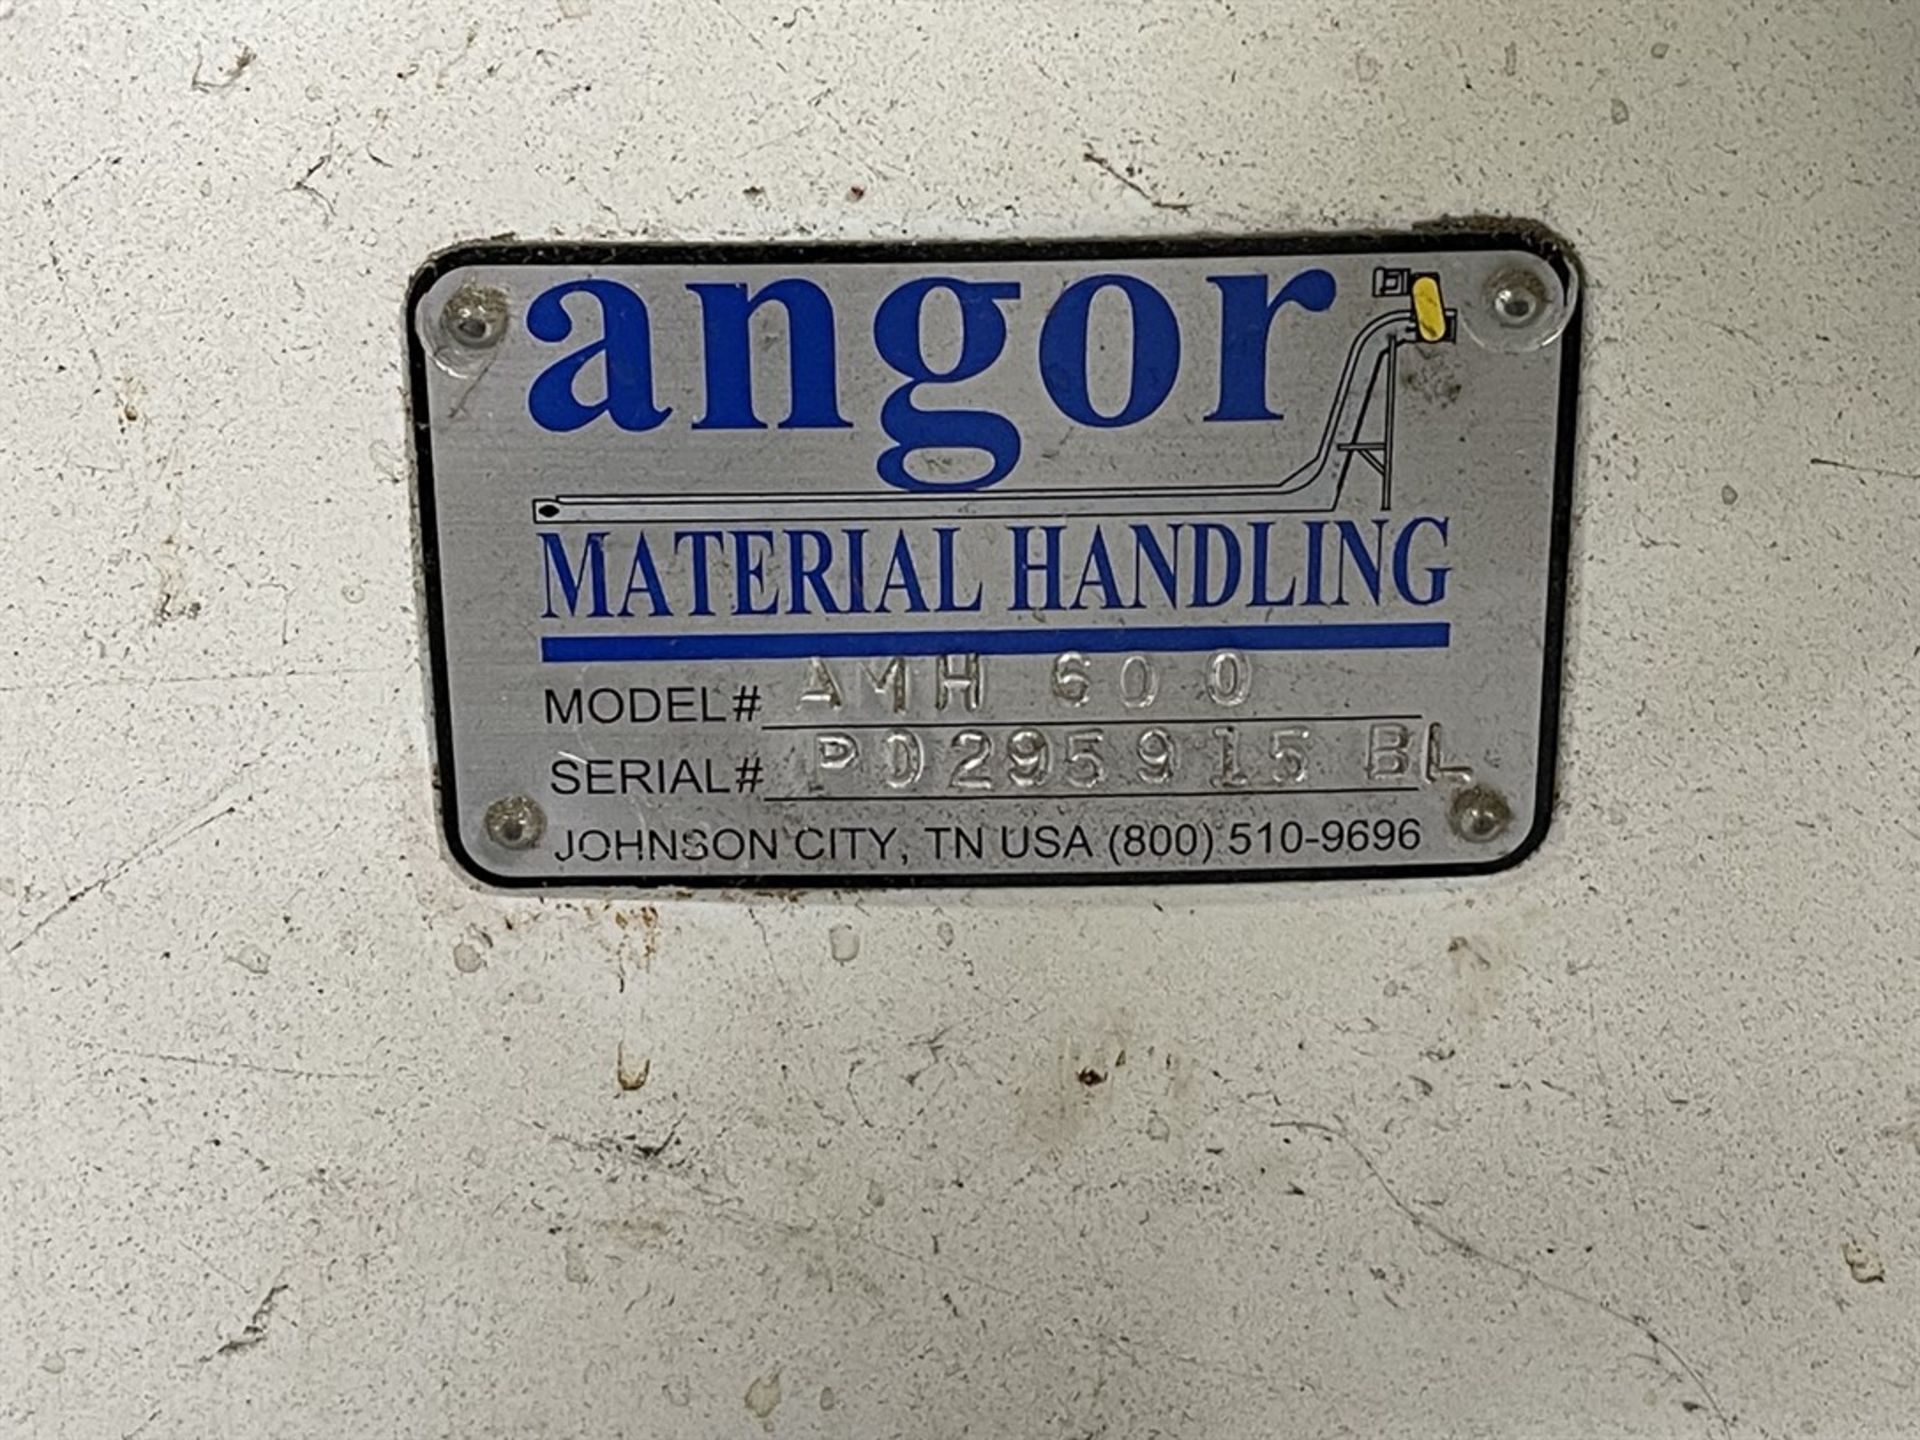 2005 ROSLER RT150 Euro Vibratory Finisher, s/n 35472/05, ANGOR AMH600 Dumper Loader, s/n P0295915BL, - Image 7 of 11